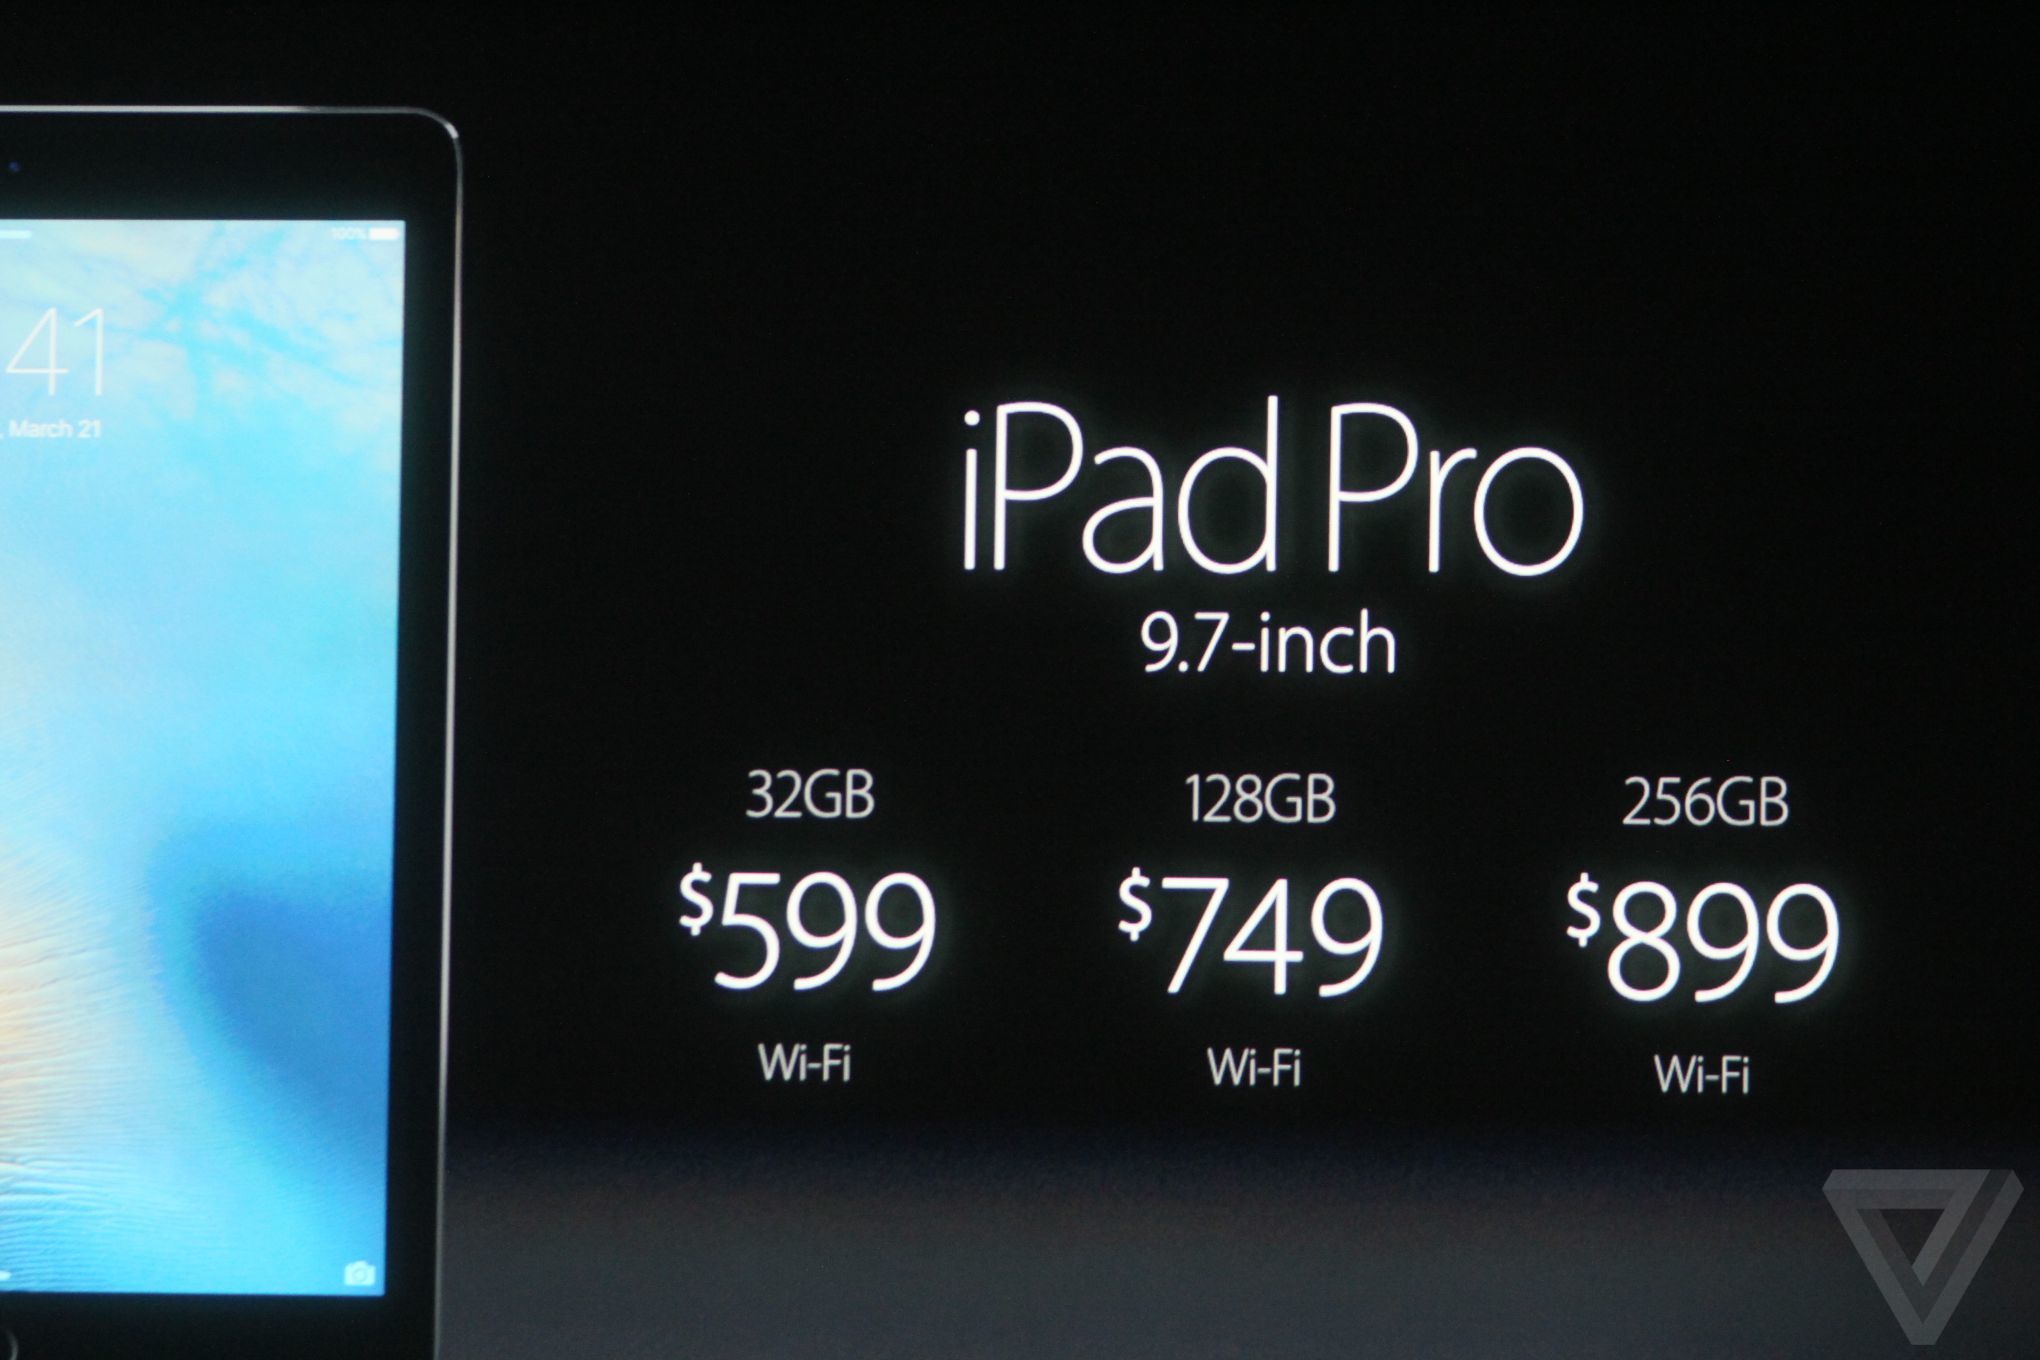 เปิดตัว iPad Pro 9.7 นิ้วขนาดใหม่เล็กกว่าแต่แรงเท่า iPad Pro เดิม